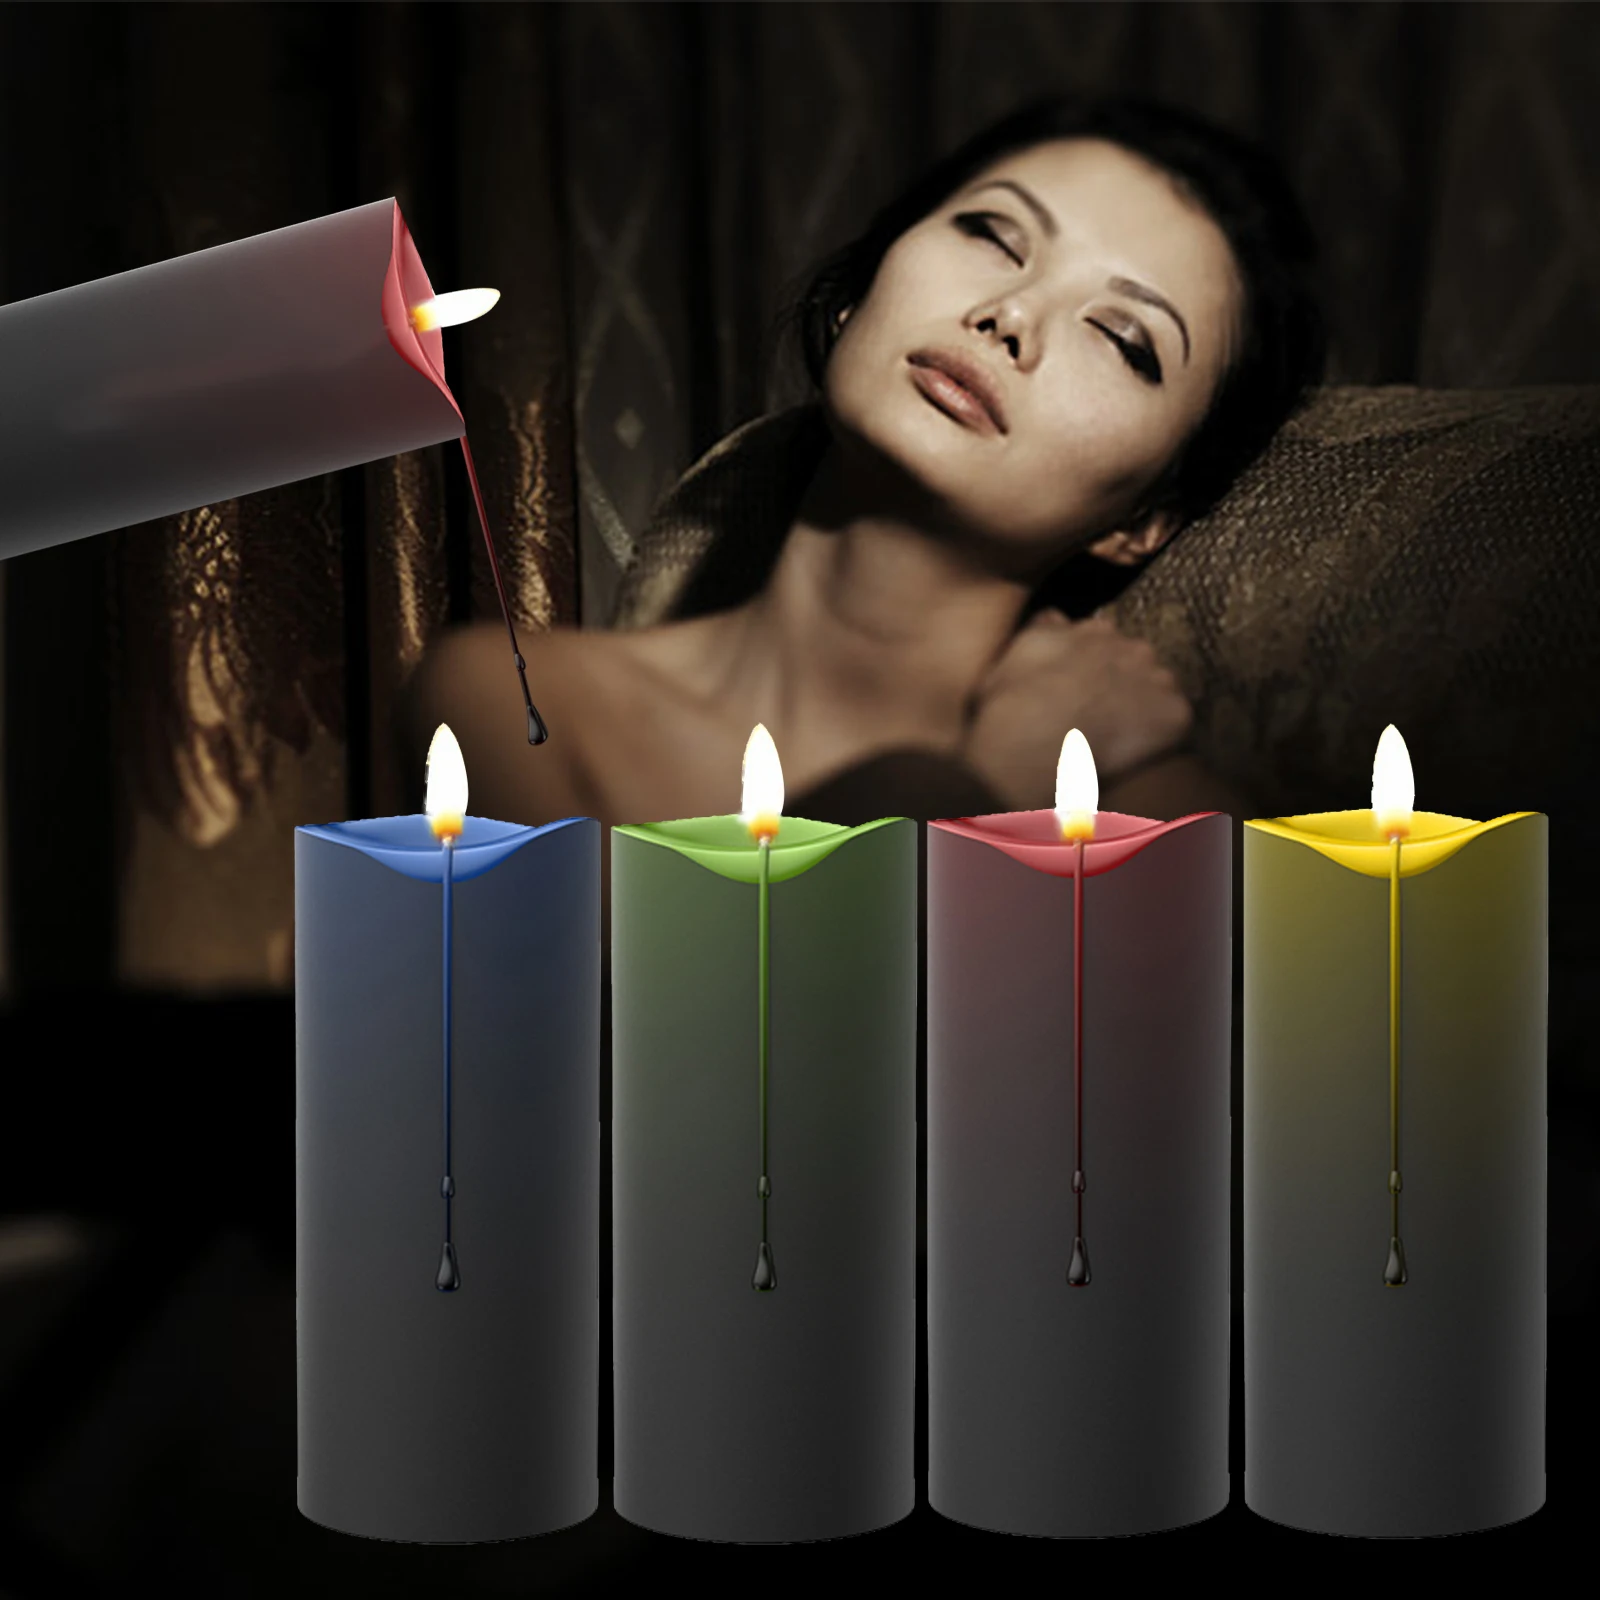 Tanie Niskotemperaturowe świece sadomasochizm akcesoria Bondage seks erotyczny zabawki niska ciepła kapanie świeca